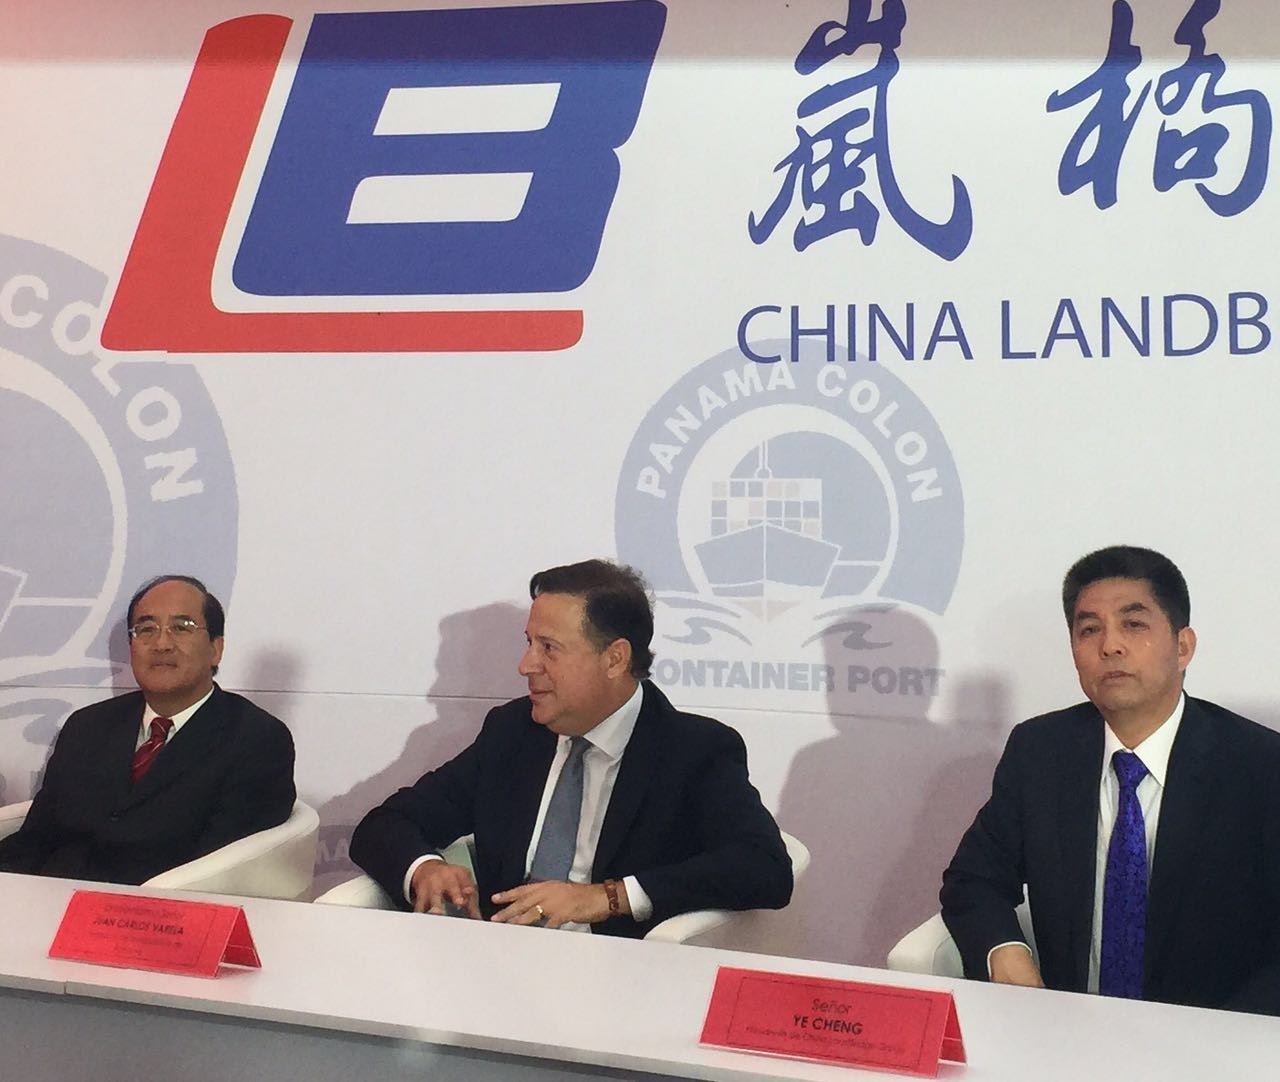 自左至右：中国巴拿马贸易发展办事处代表王卫华、巴拿马总统巴雷拉和岚桥集团董事长叶成。　